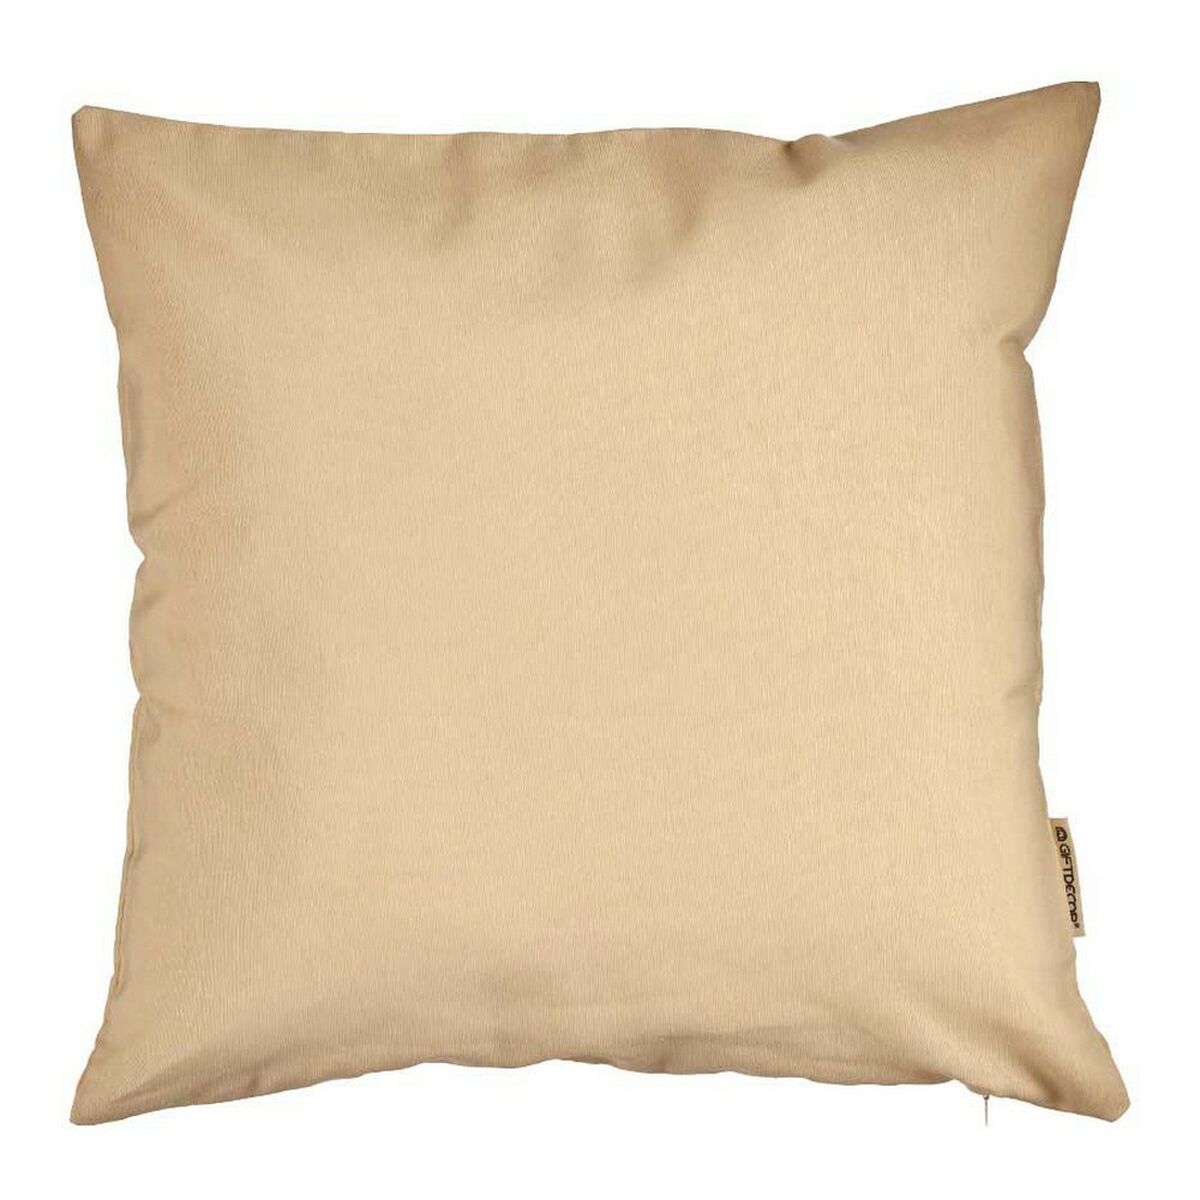 Cushion cover Cream Beige 45 x 0,5 x 45 cm 60 x 0,5 x 60 cm